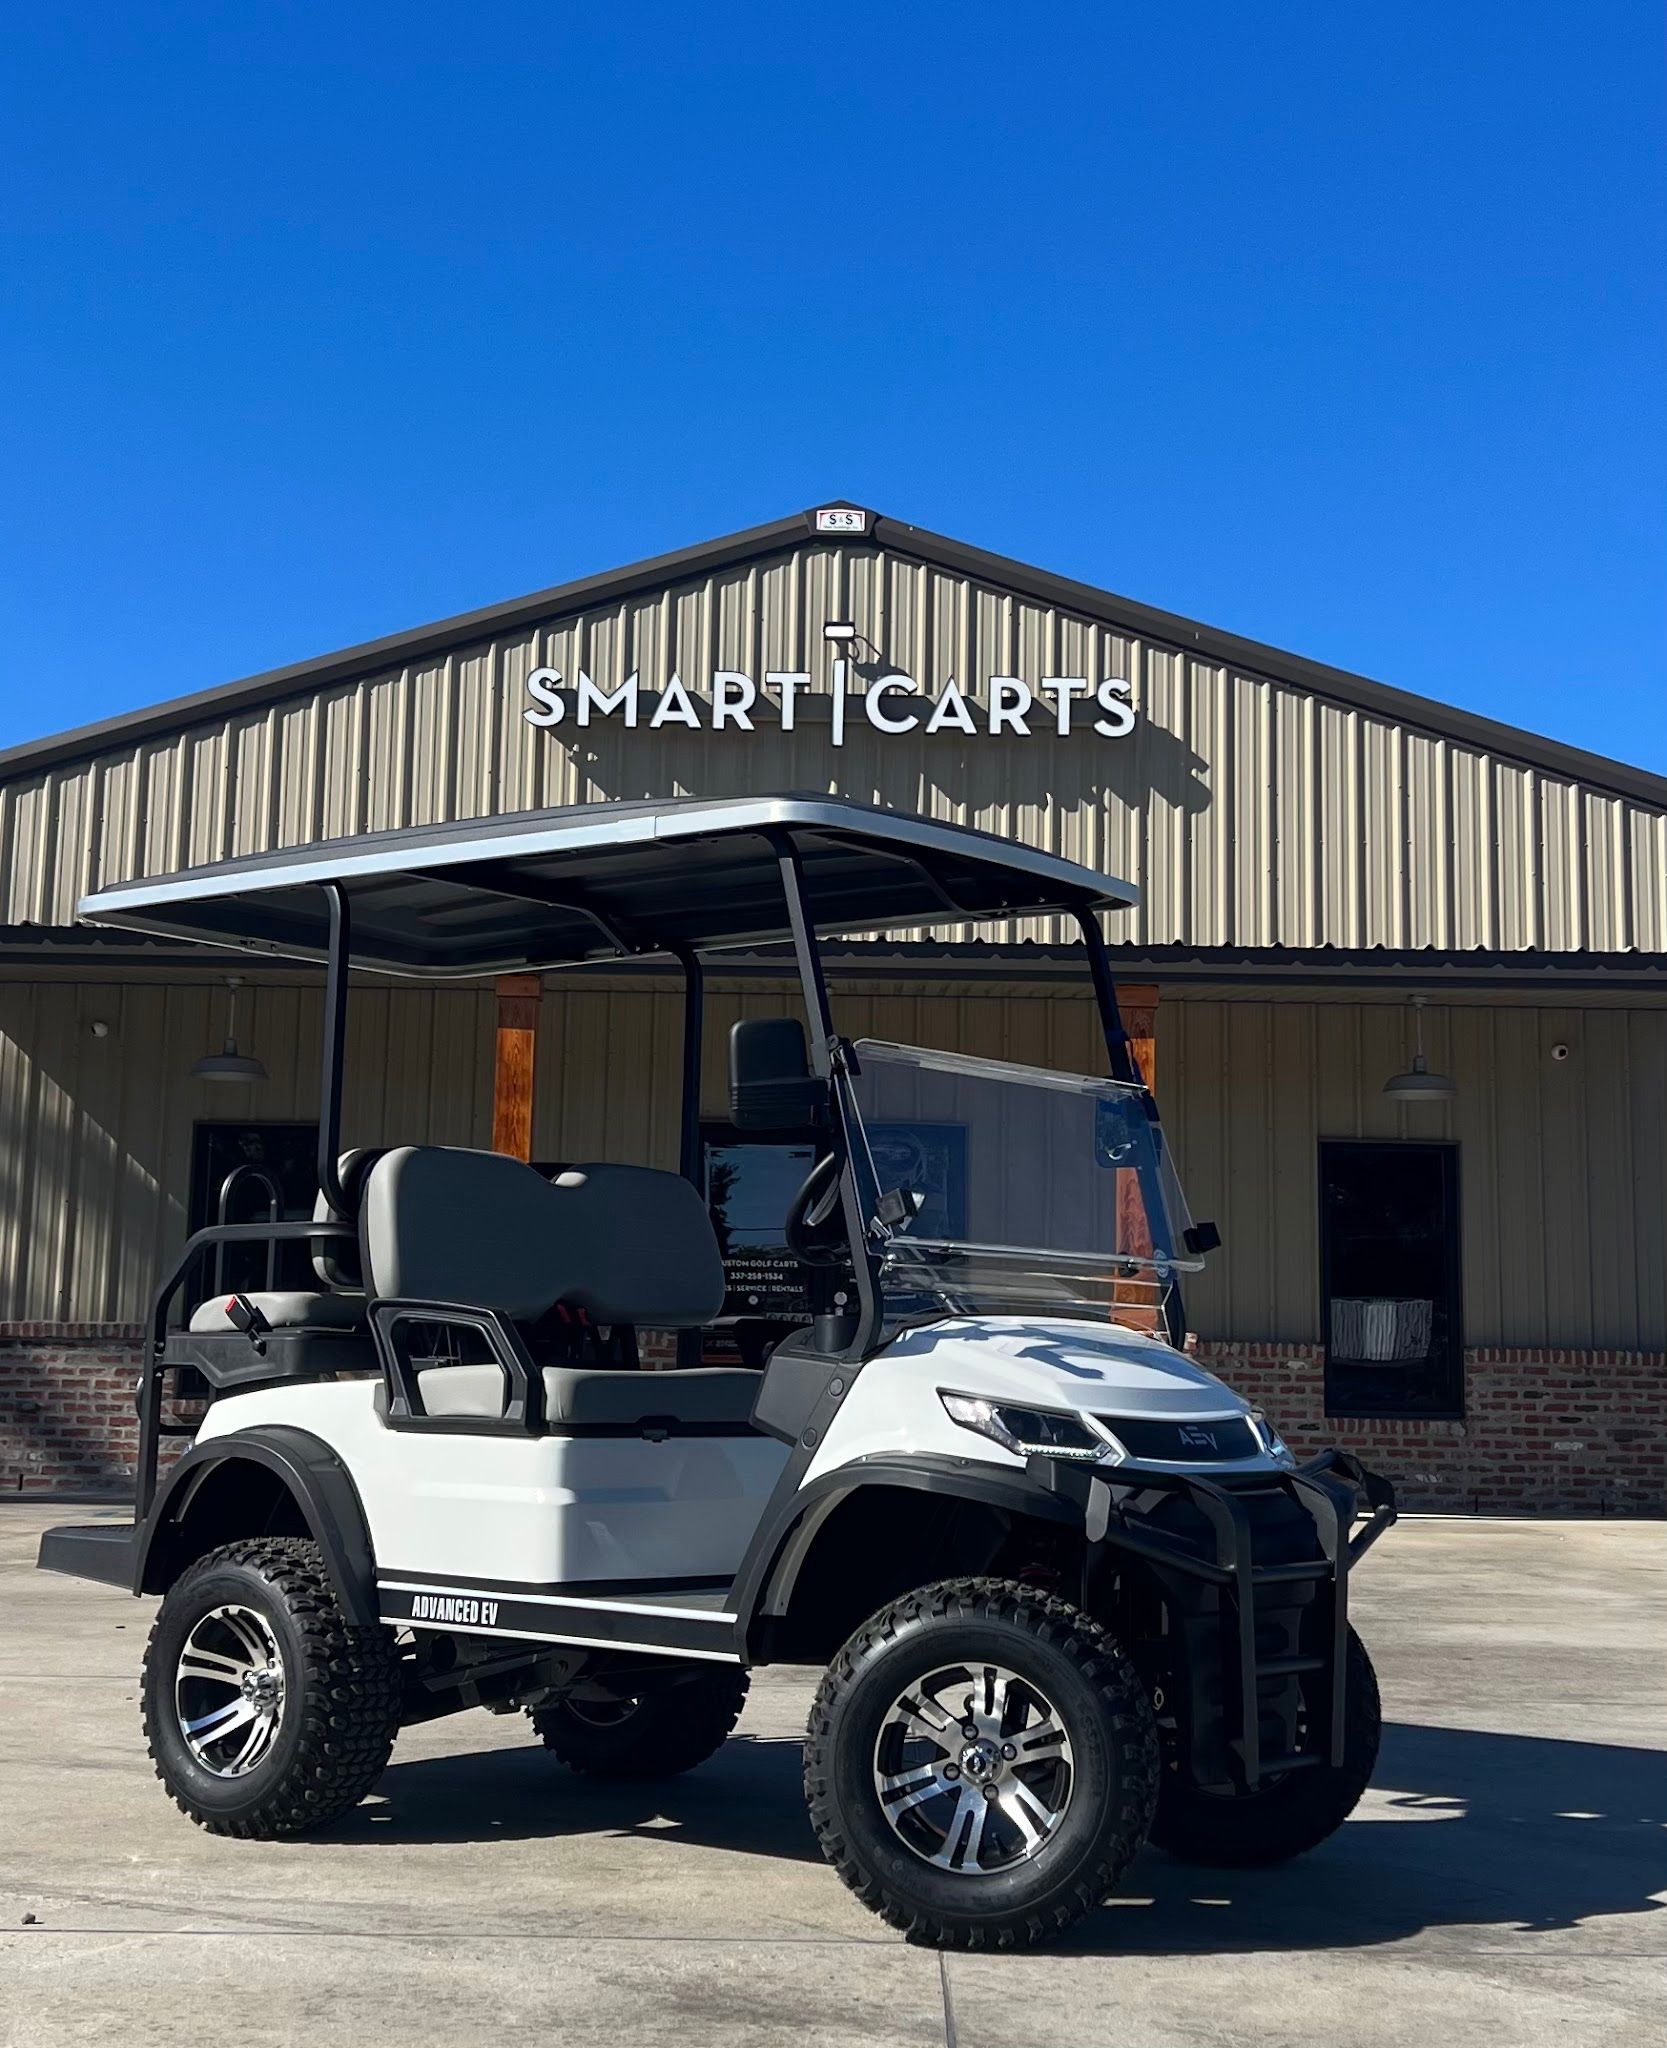 Services & Products Smart Carts LLC in Breaux Bridge LA